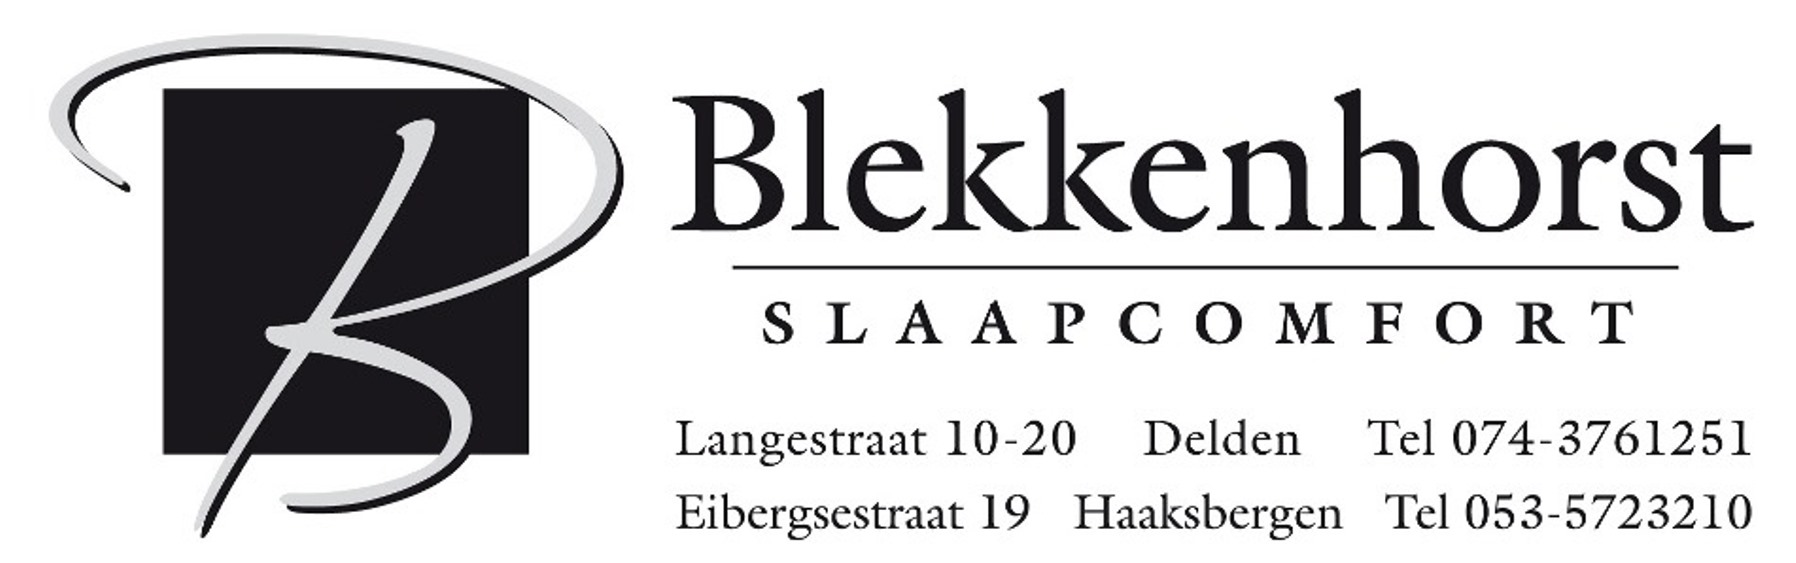 Afspraak maken Blekkenhorst Slaapcomfort Haaksbergen